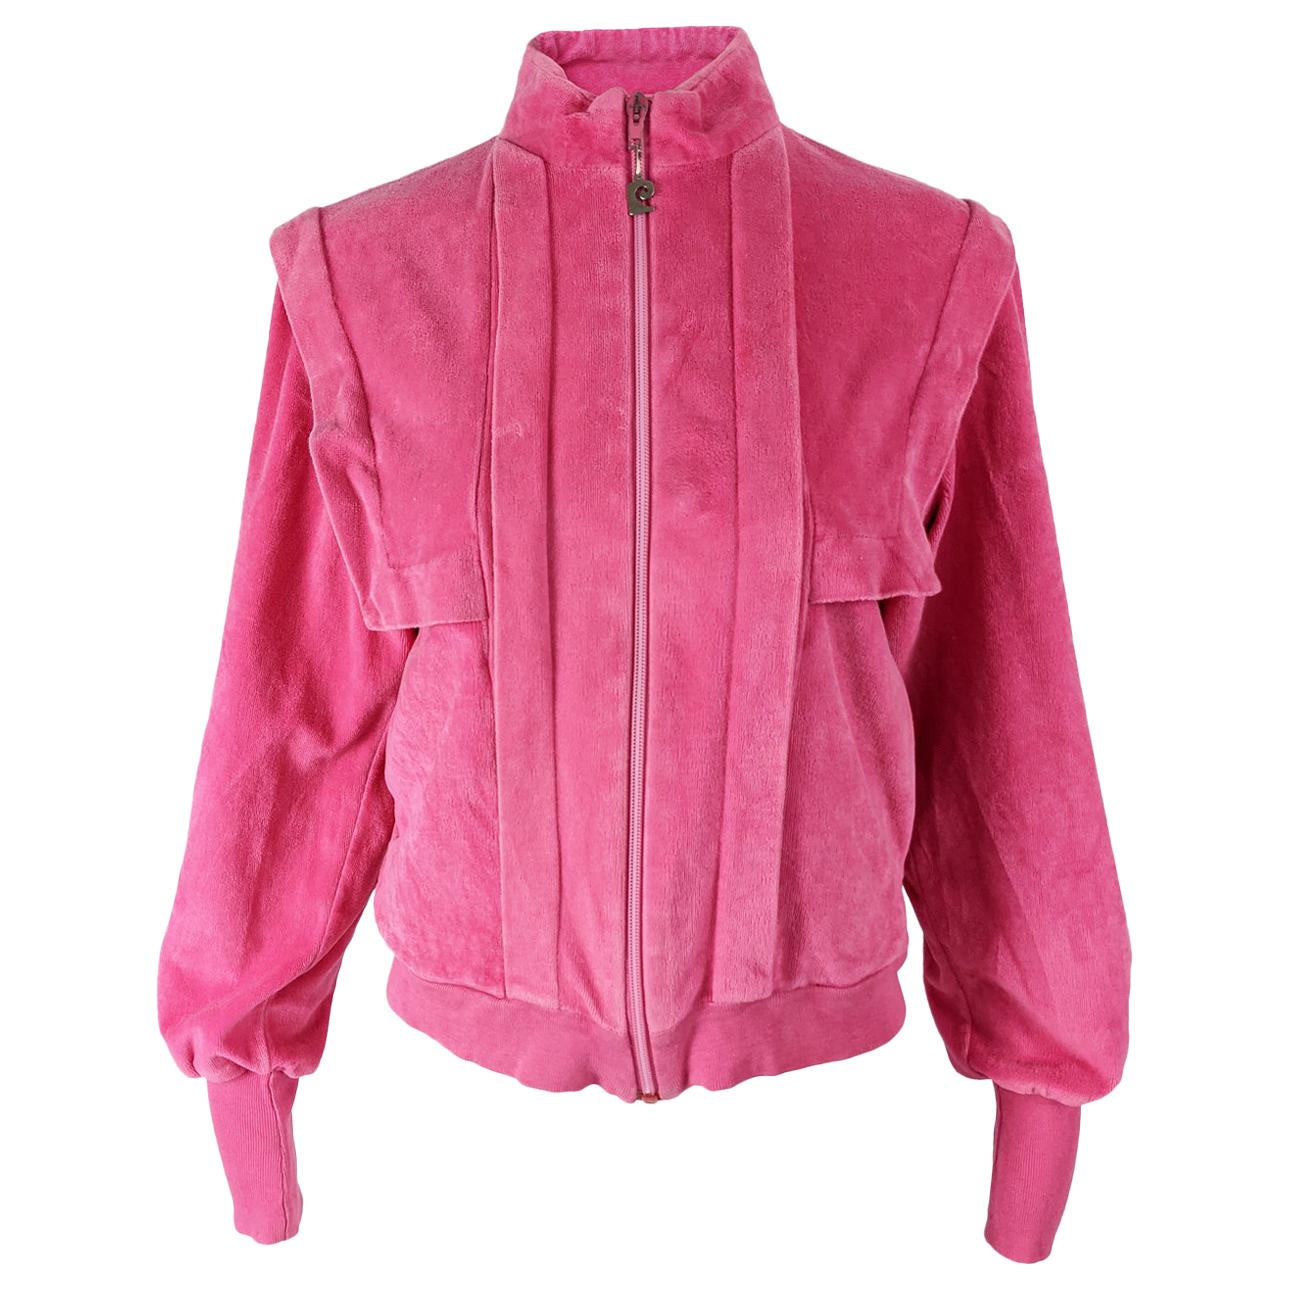 Bubble gum pink short 60s jacket